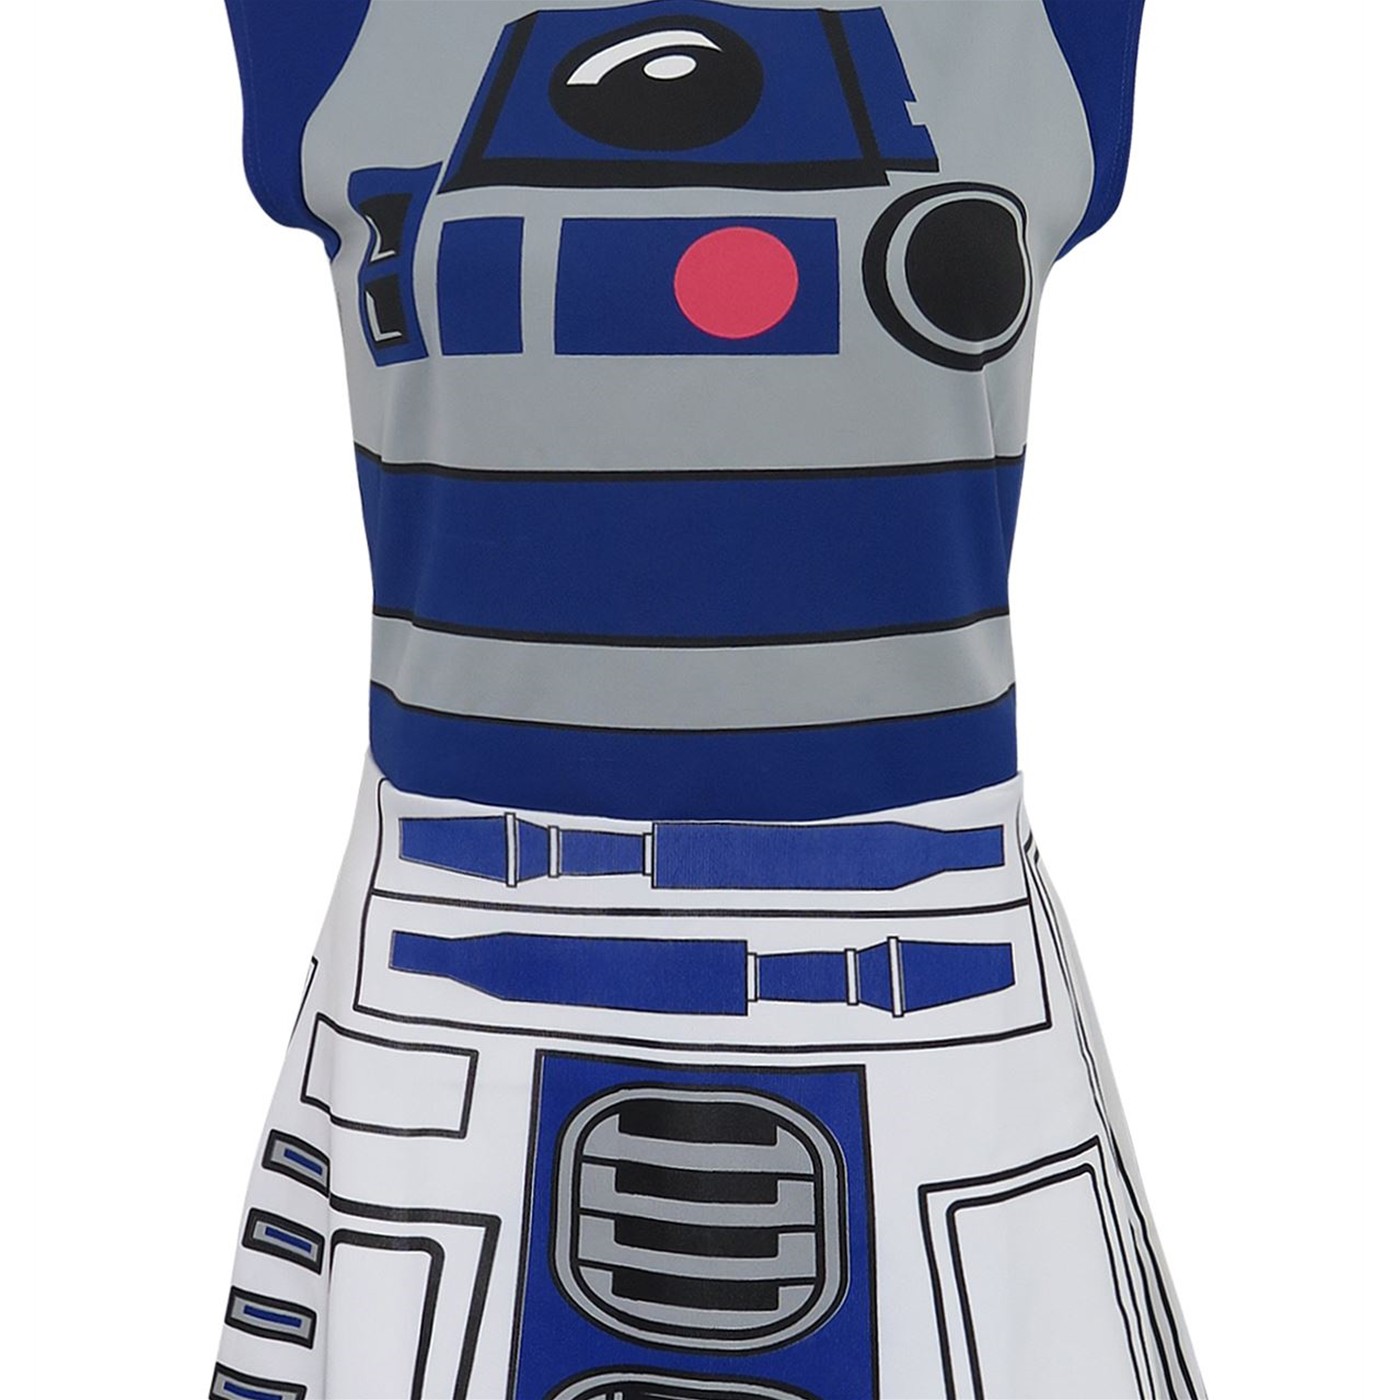 Star Wars R2-D2 Women's Meshback Skater Dress